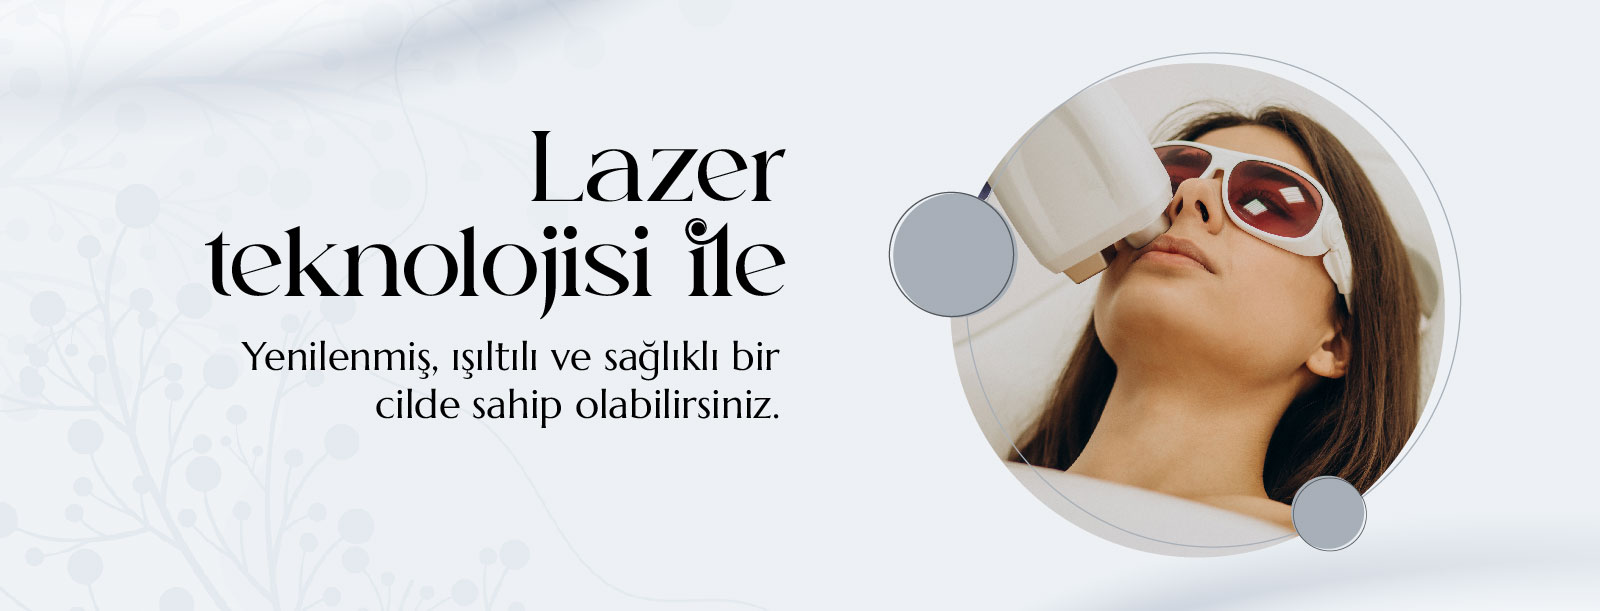 Lazer Teknolojisi ile yenilenmiş, ışıltılı ve sağlıklı bir cilde sahip olabilirsiniz.